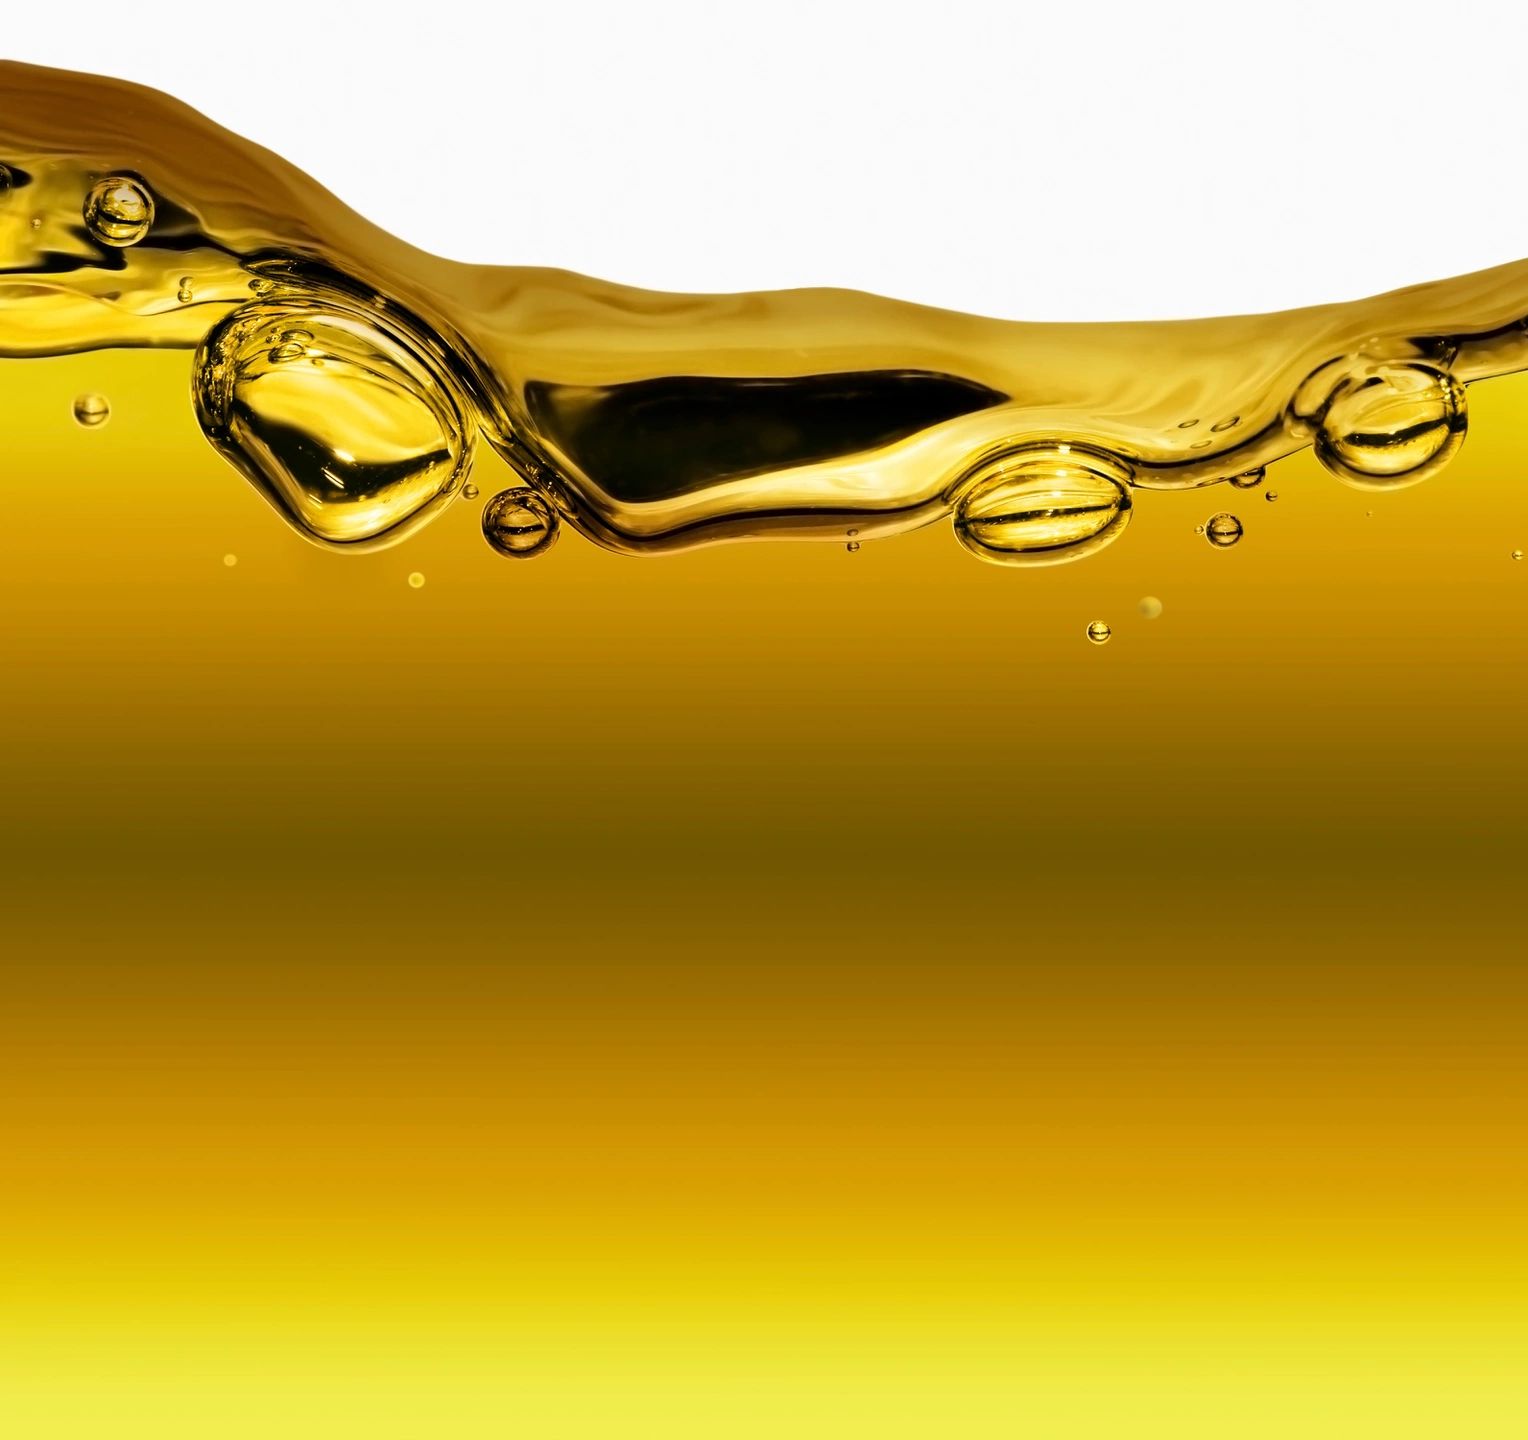 Oil showing immiscible bubbles